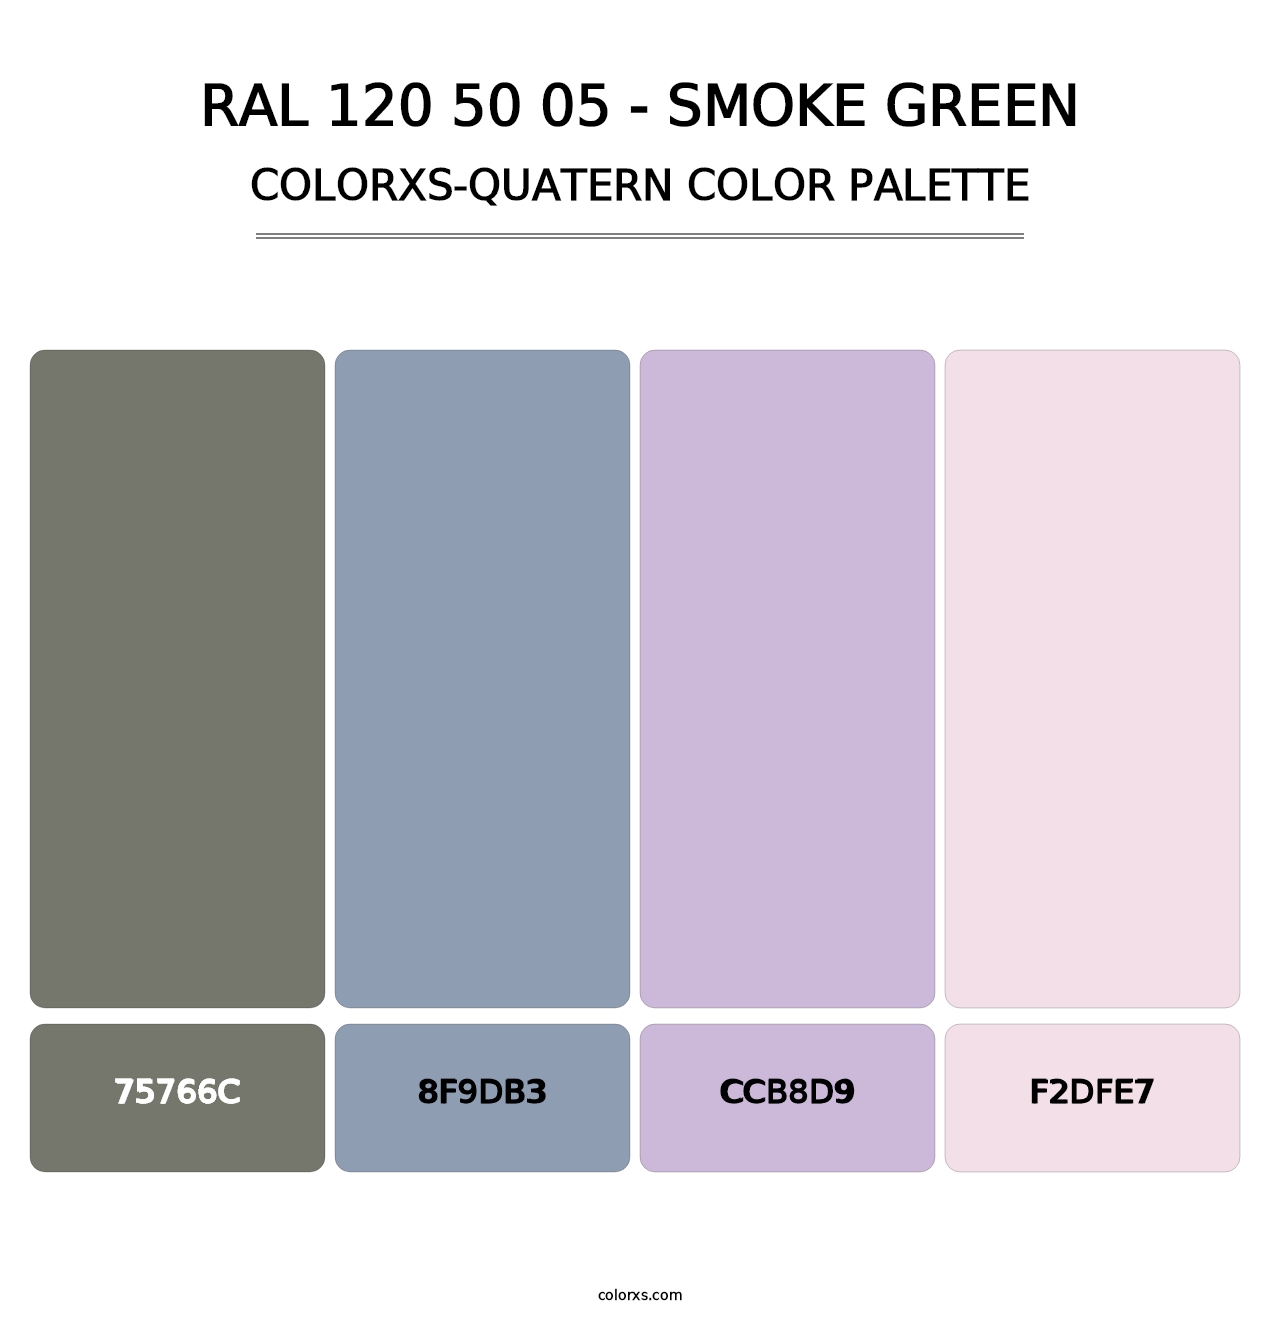 RAL 120 50 05 - Smoke Green - Colorxs Quatern Palette